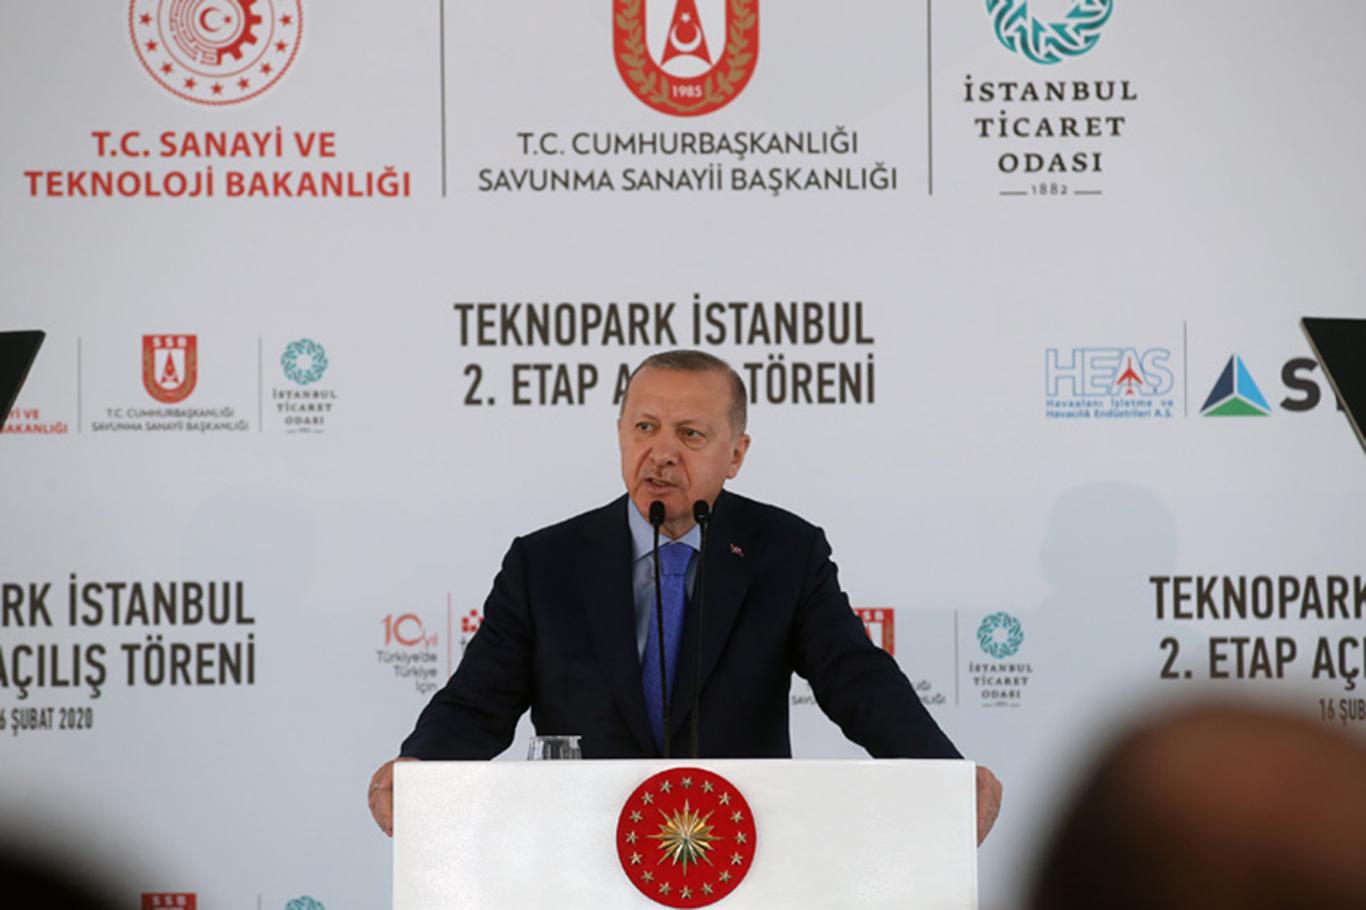 Cumhurbaşkanı Erdoğan: "Türkiye’nin geleceği teknolojide ve inovasyondadır"